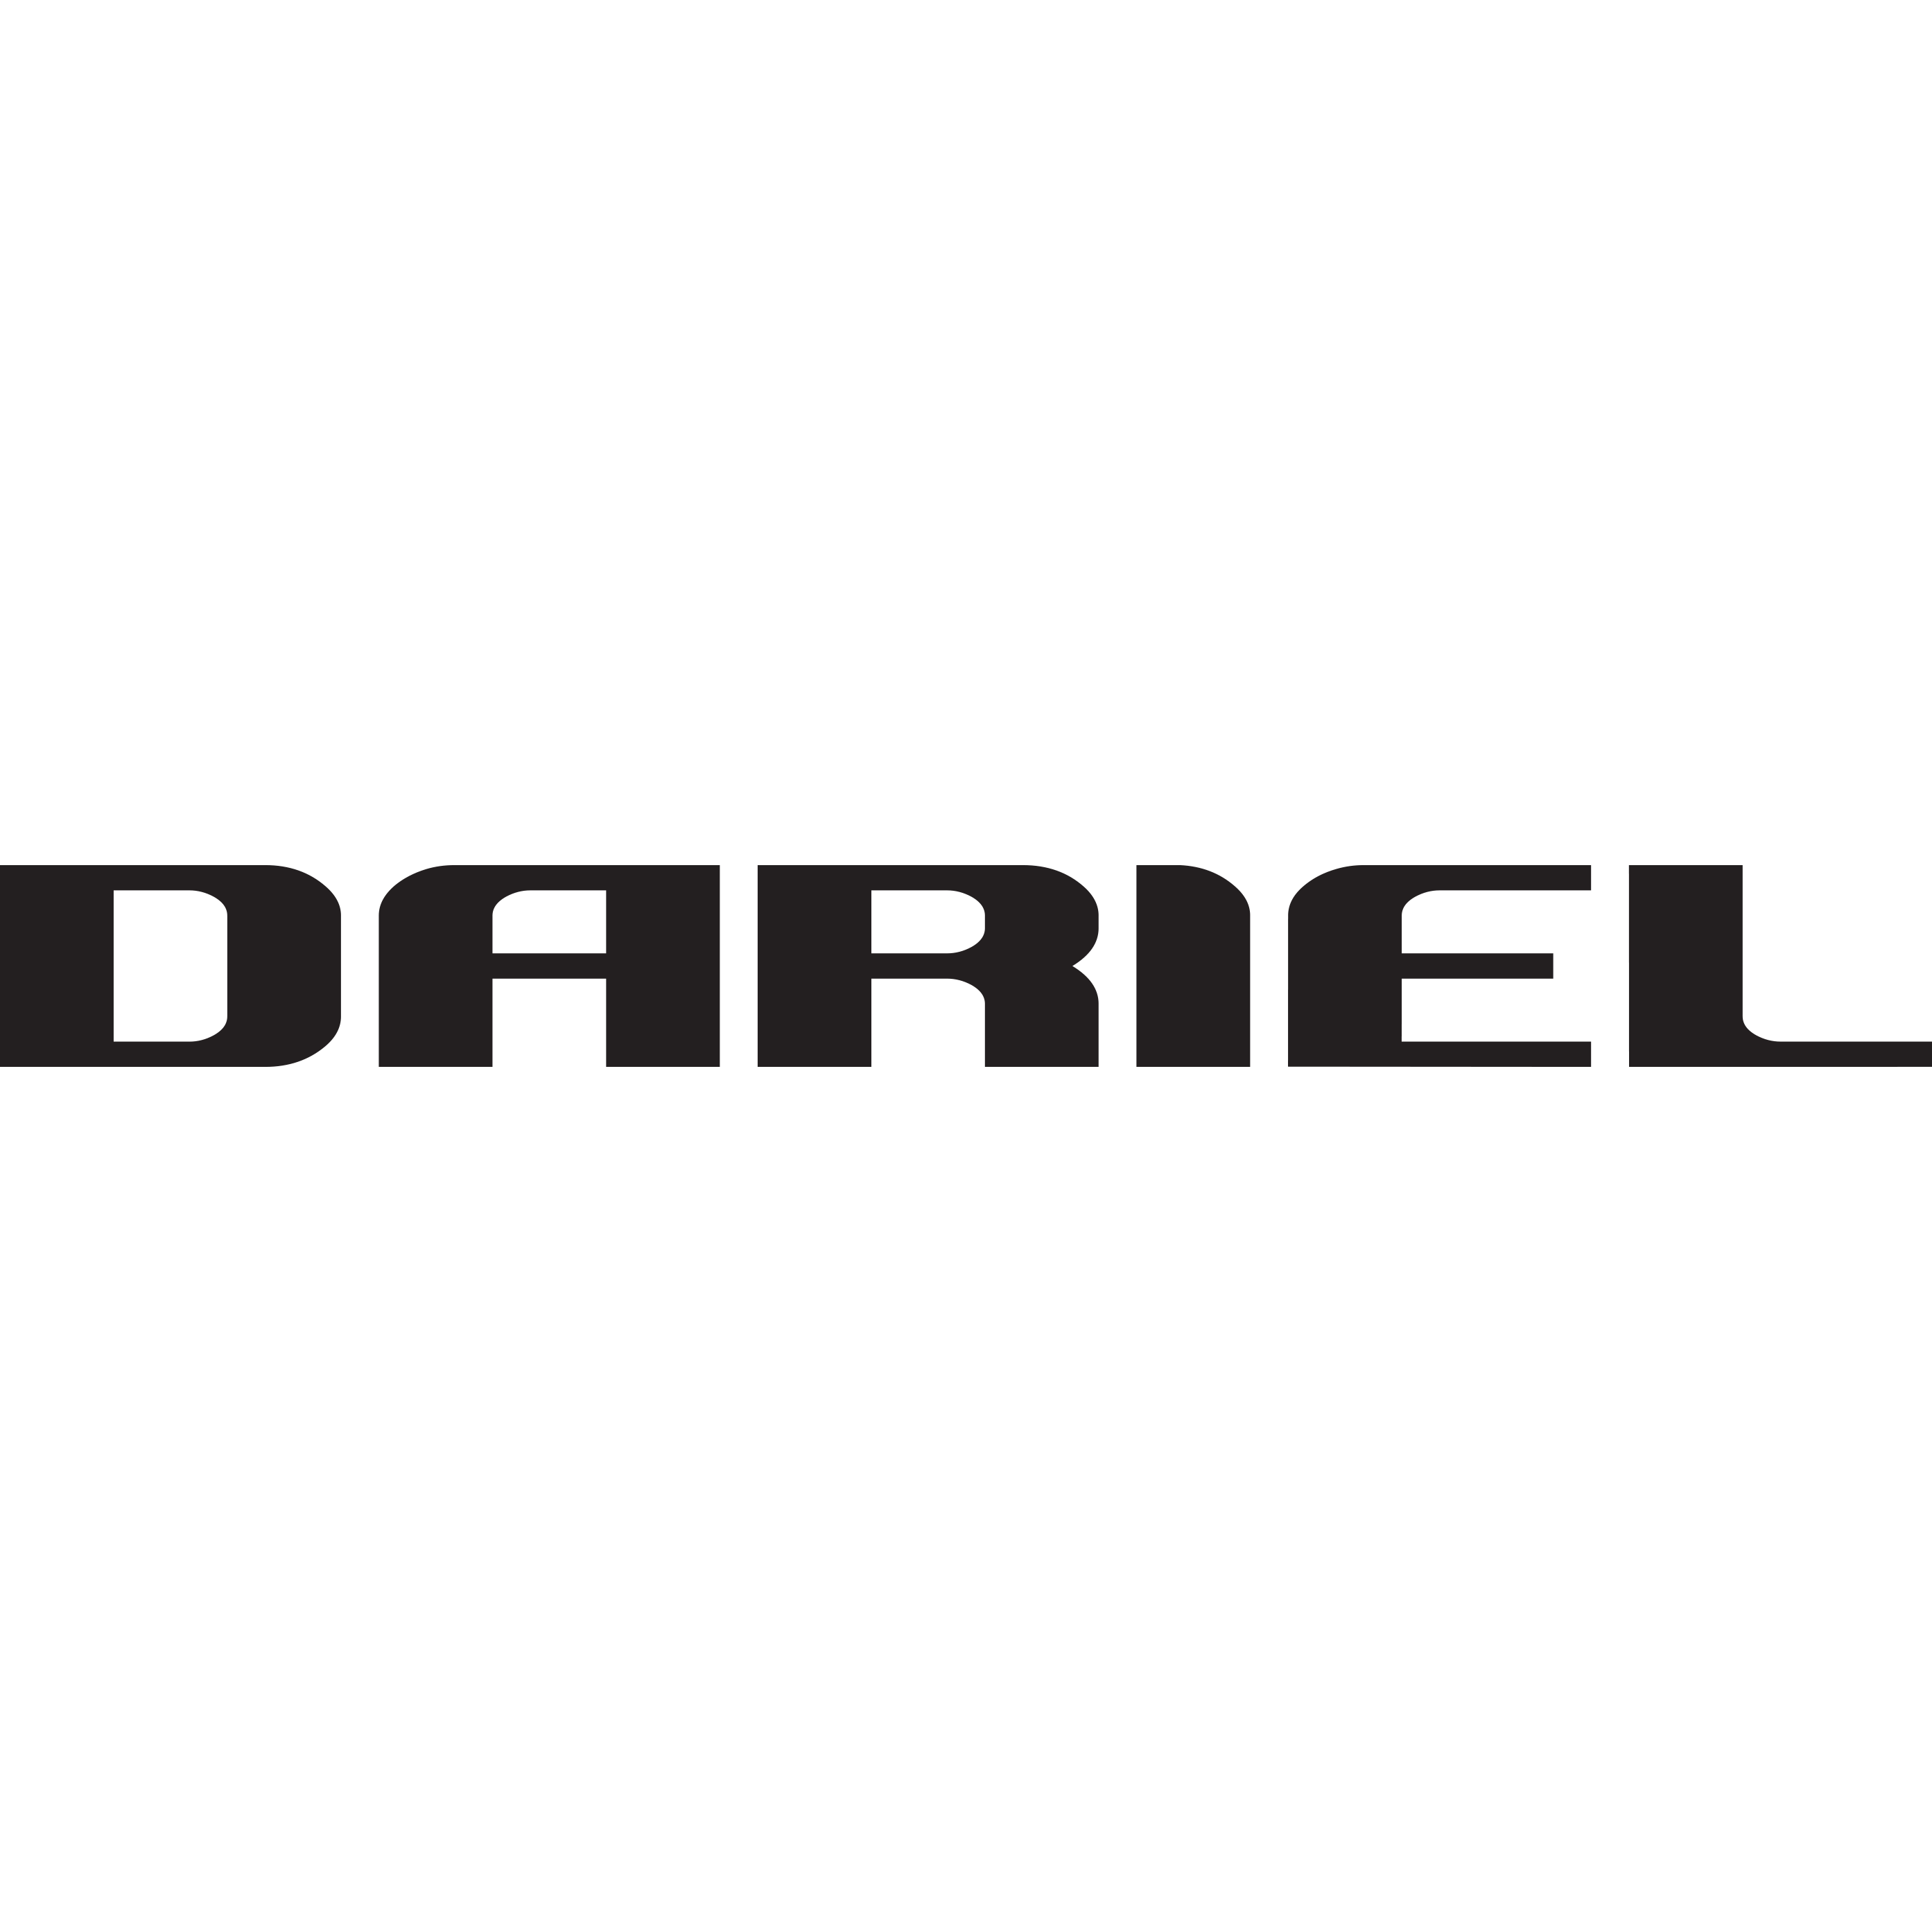 Dariel_logo.png